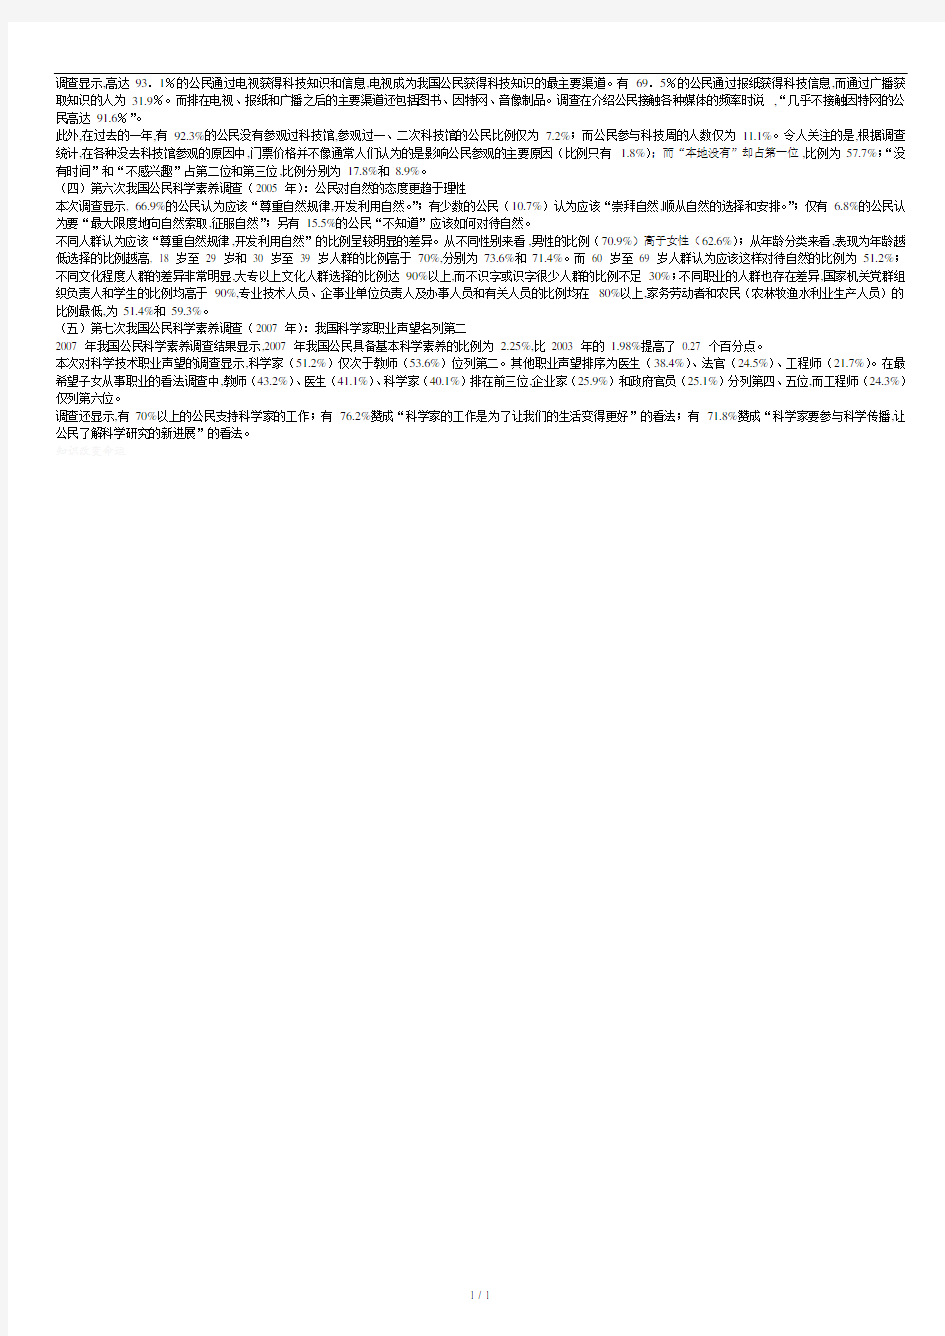 中国公民科学素养调查报告.doc